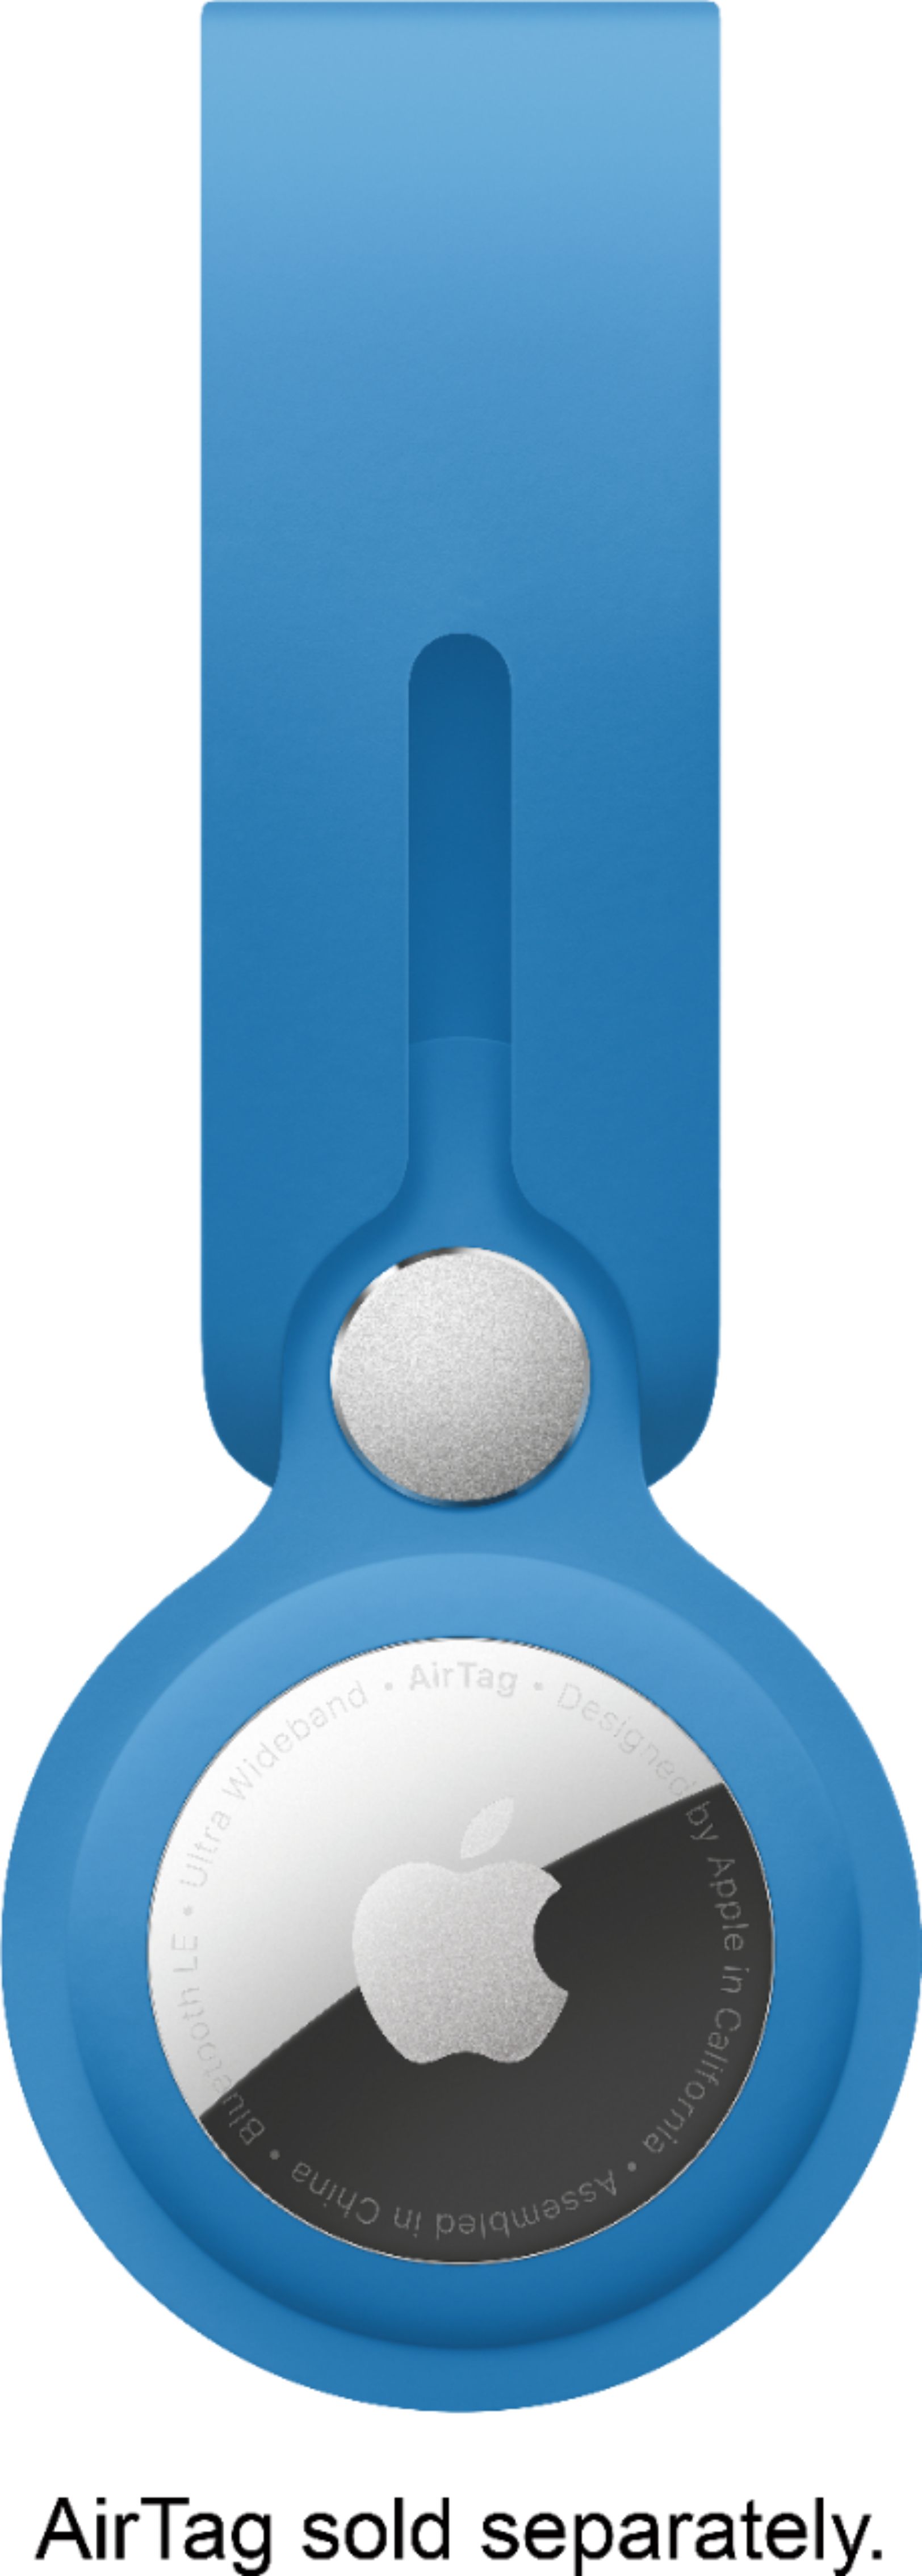 Apple AirTag Best Buy Blue - MLYX3ZM/A Loop Capri